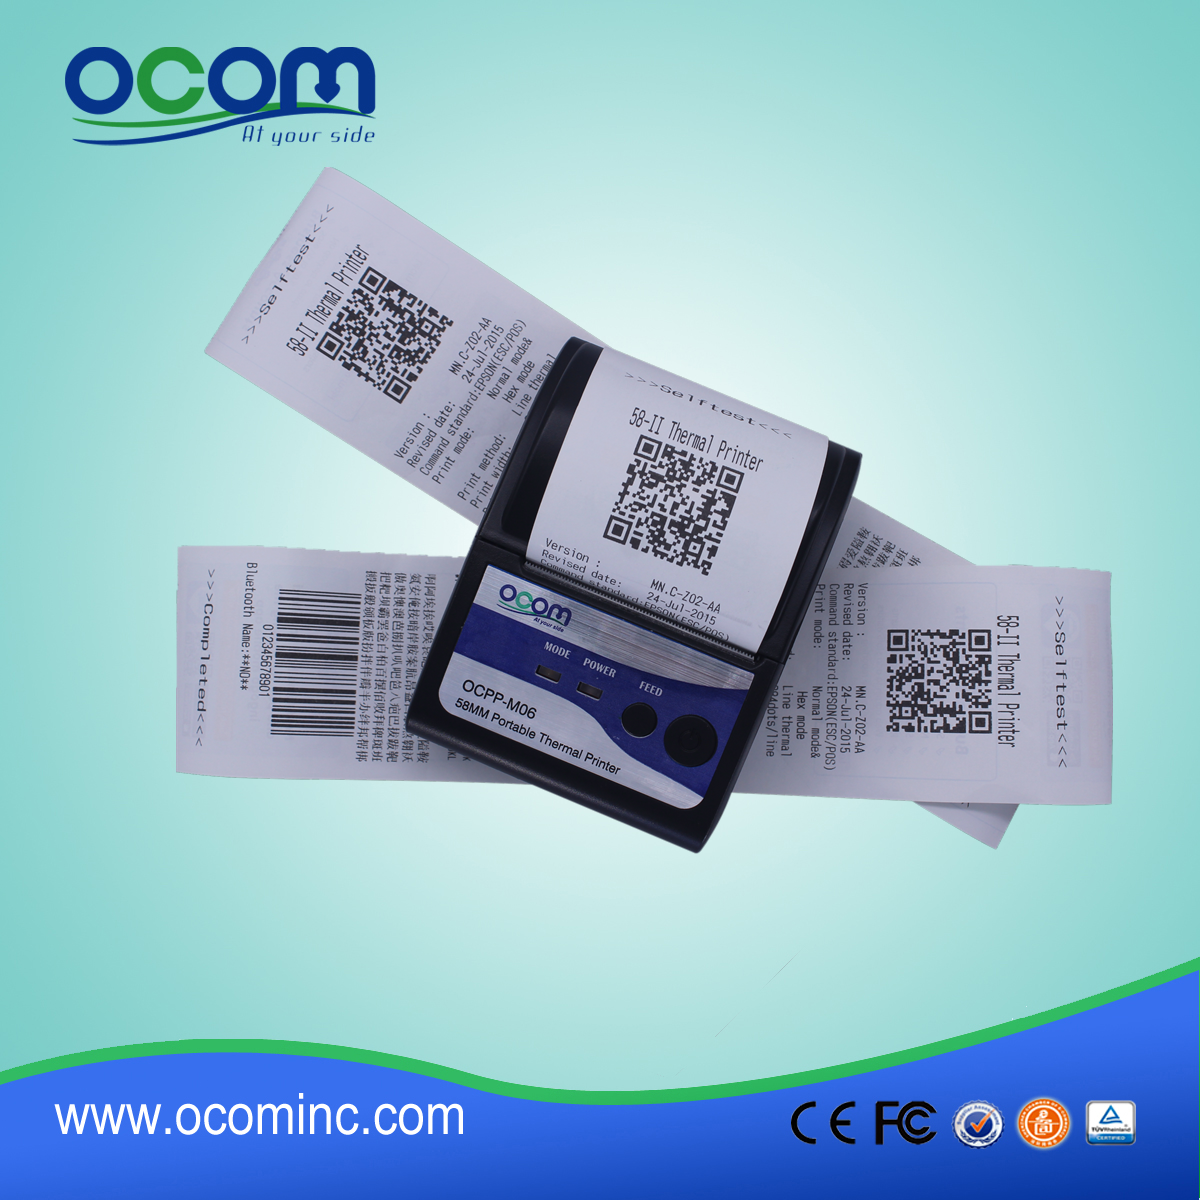 (أوكب-M06) الصين مصنع أوكوم يده طابعة bluetooth، الطابعة المحمولة ميني